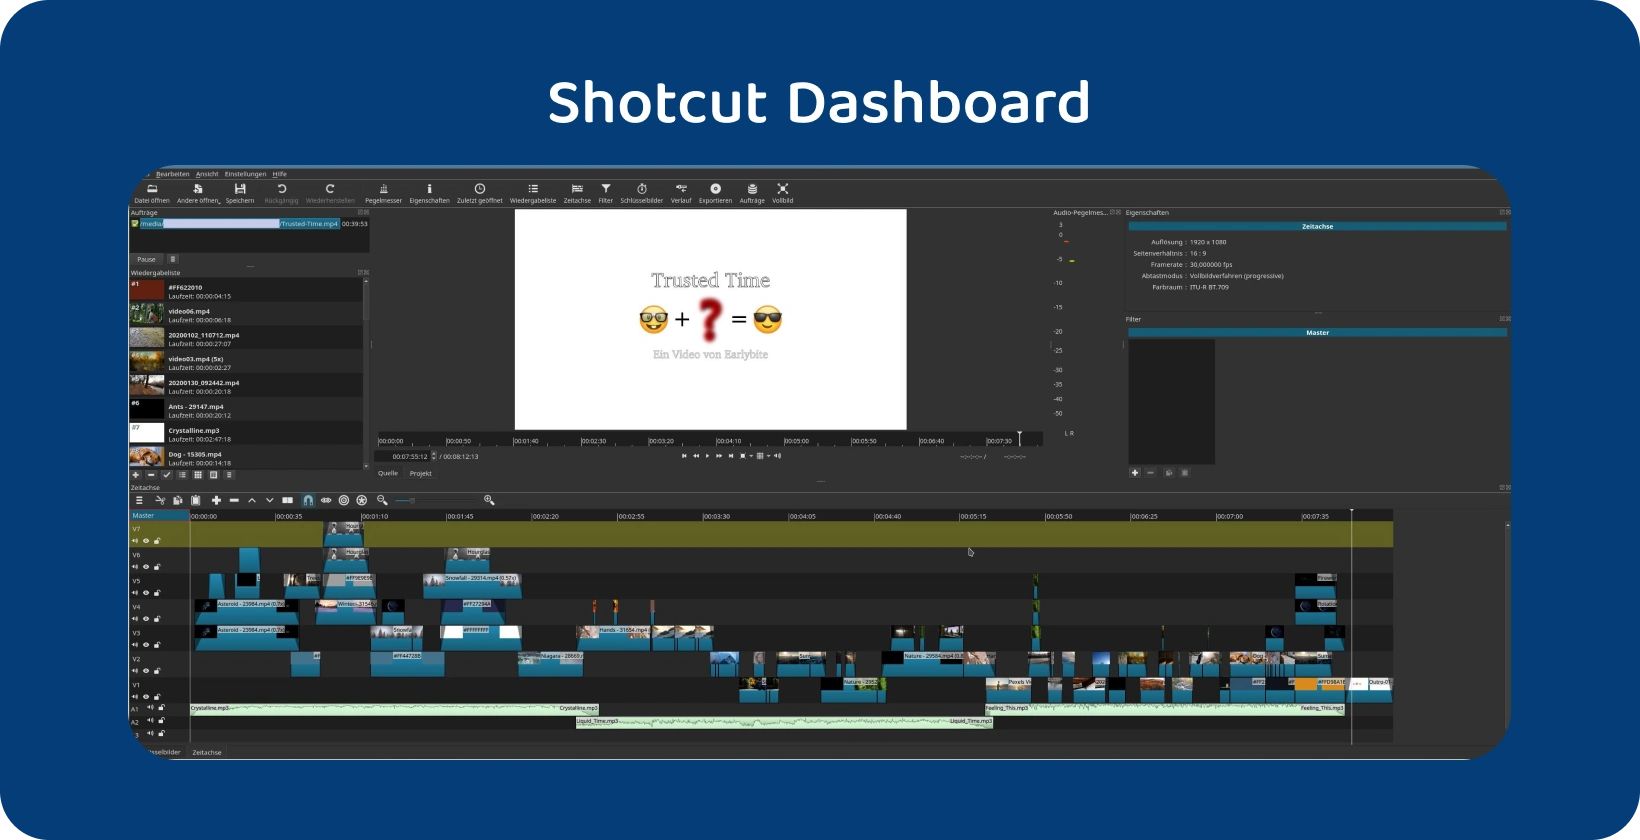 Softvér na úpravu videa Shotcut zobrazenie zložitej časovej osi s viacerými stopami, čo naznačuje pokročilý projekt.